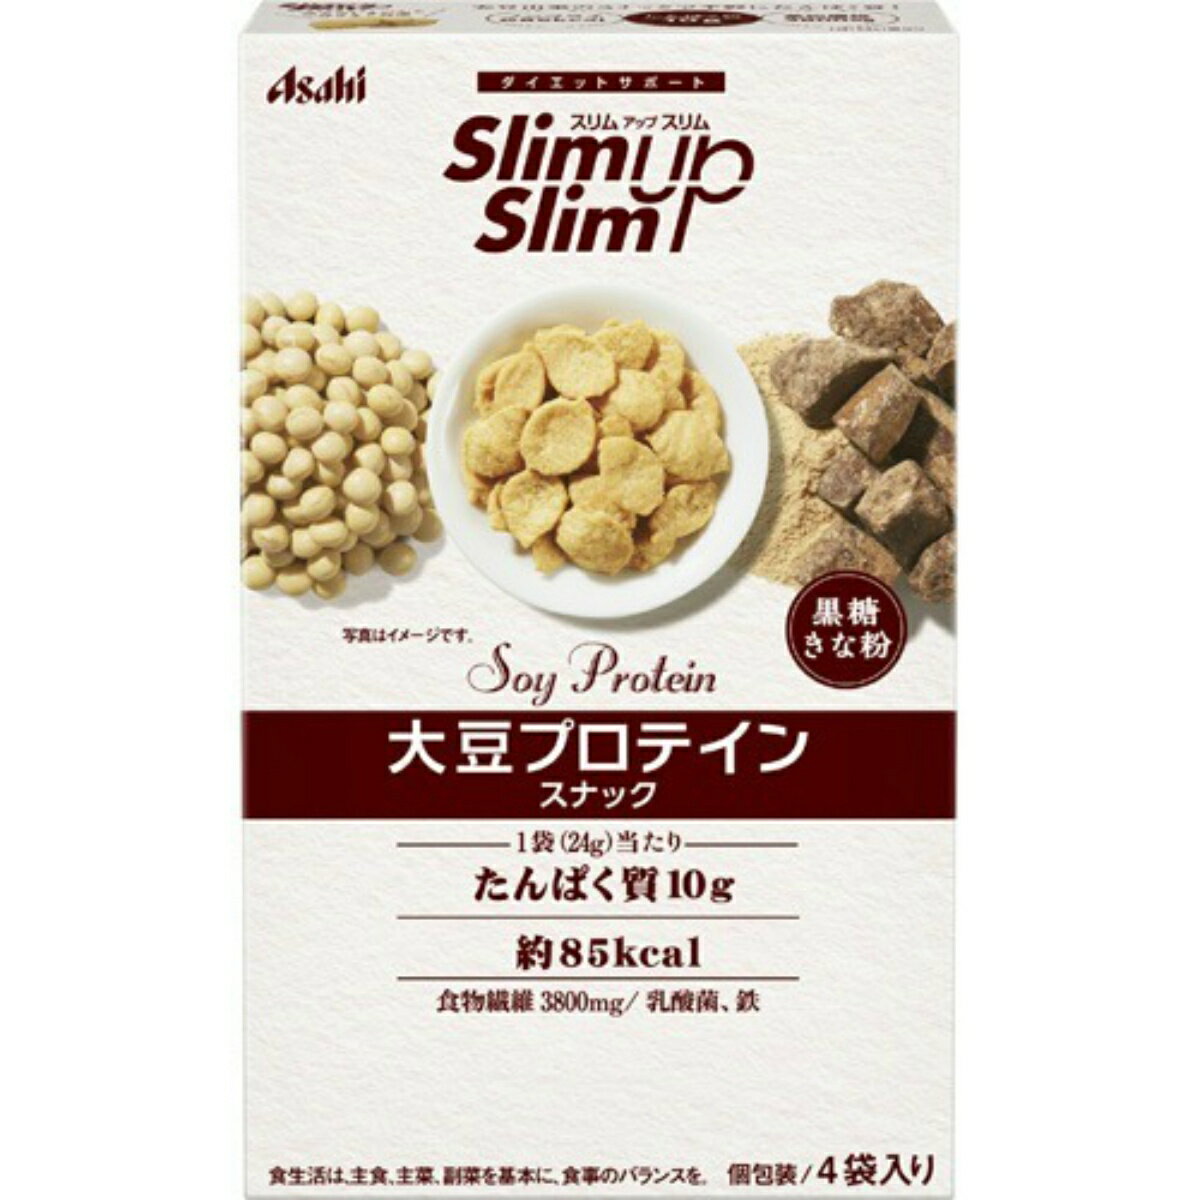 アサヒグループ食品 スリムアップスリム 大豆プロテインスナック 黒糖きな粉 20g×4袋入